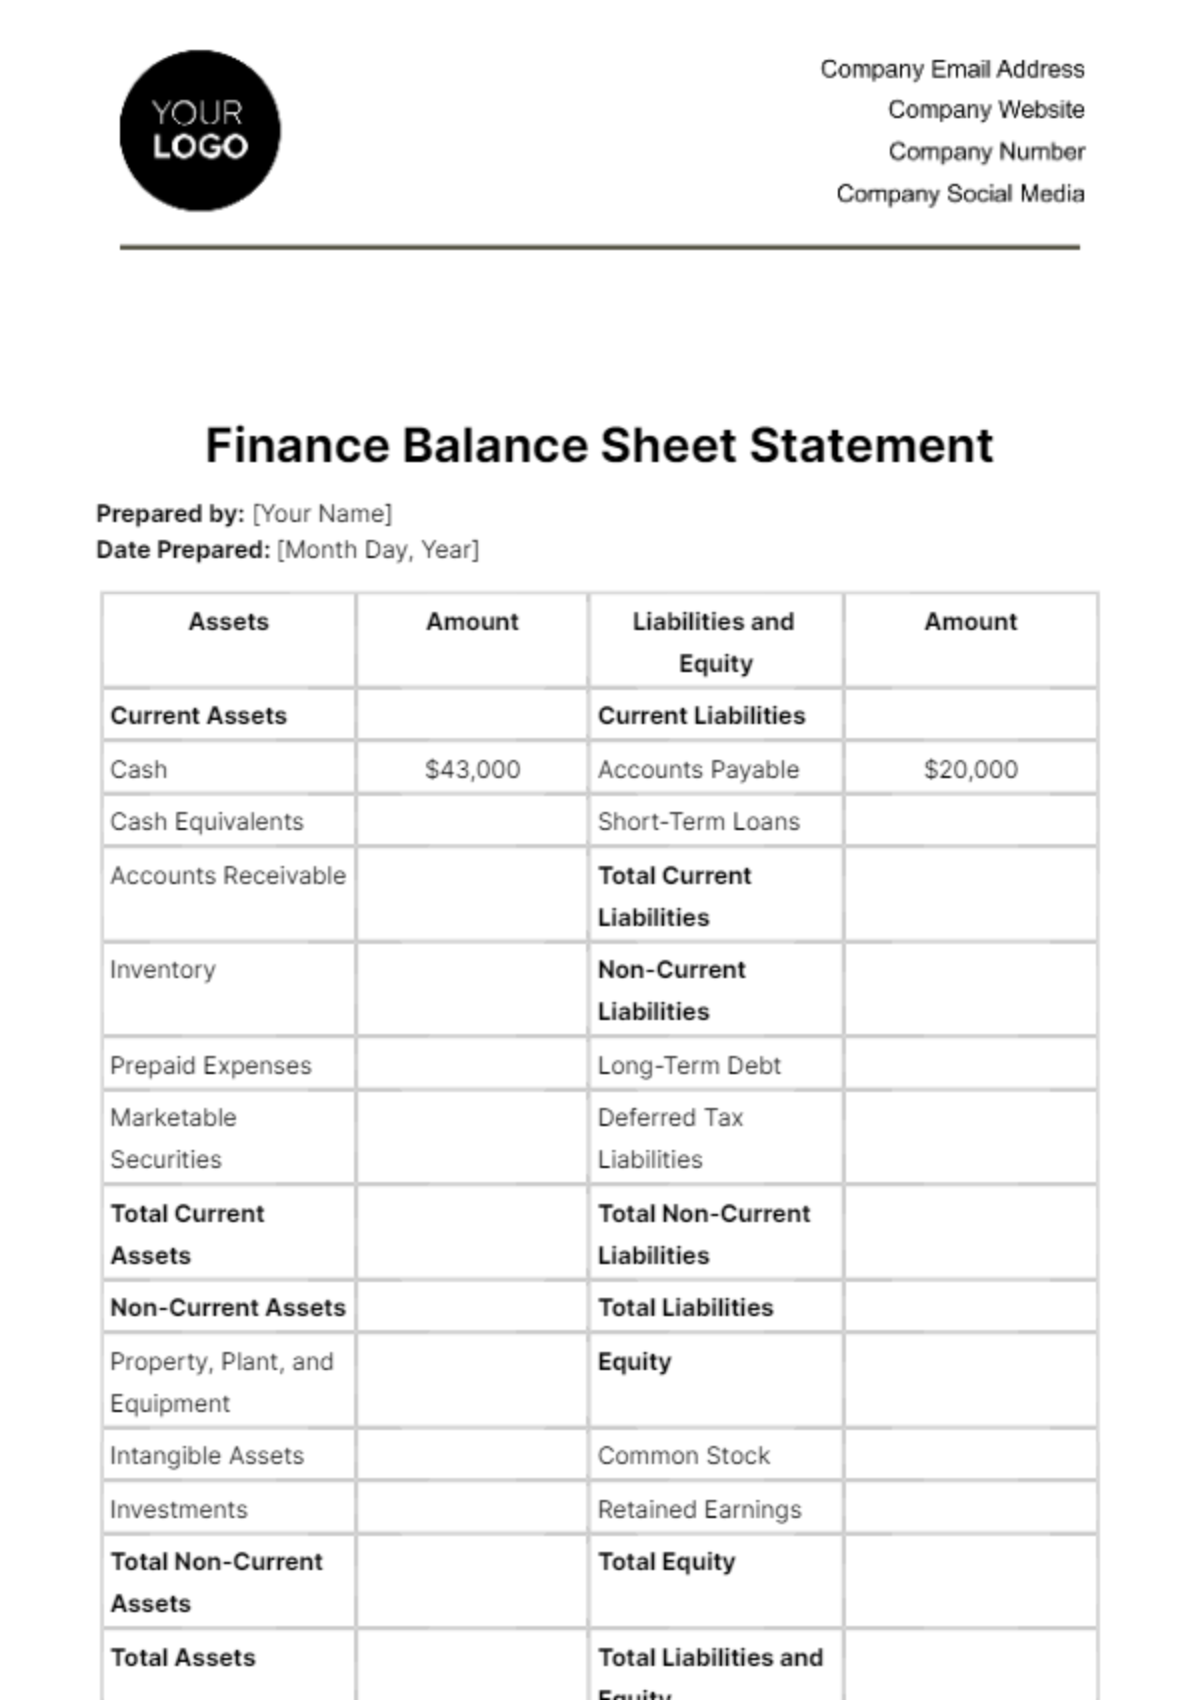 Free Finance Balance Sheet Statement Template